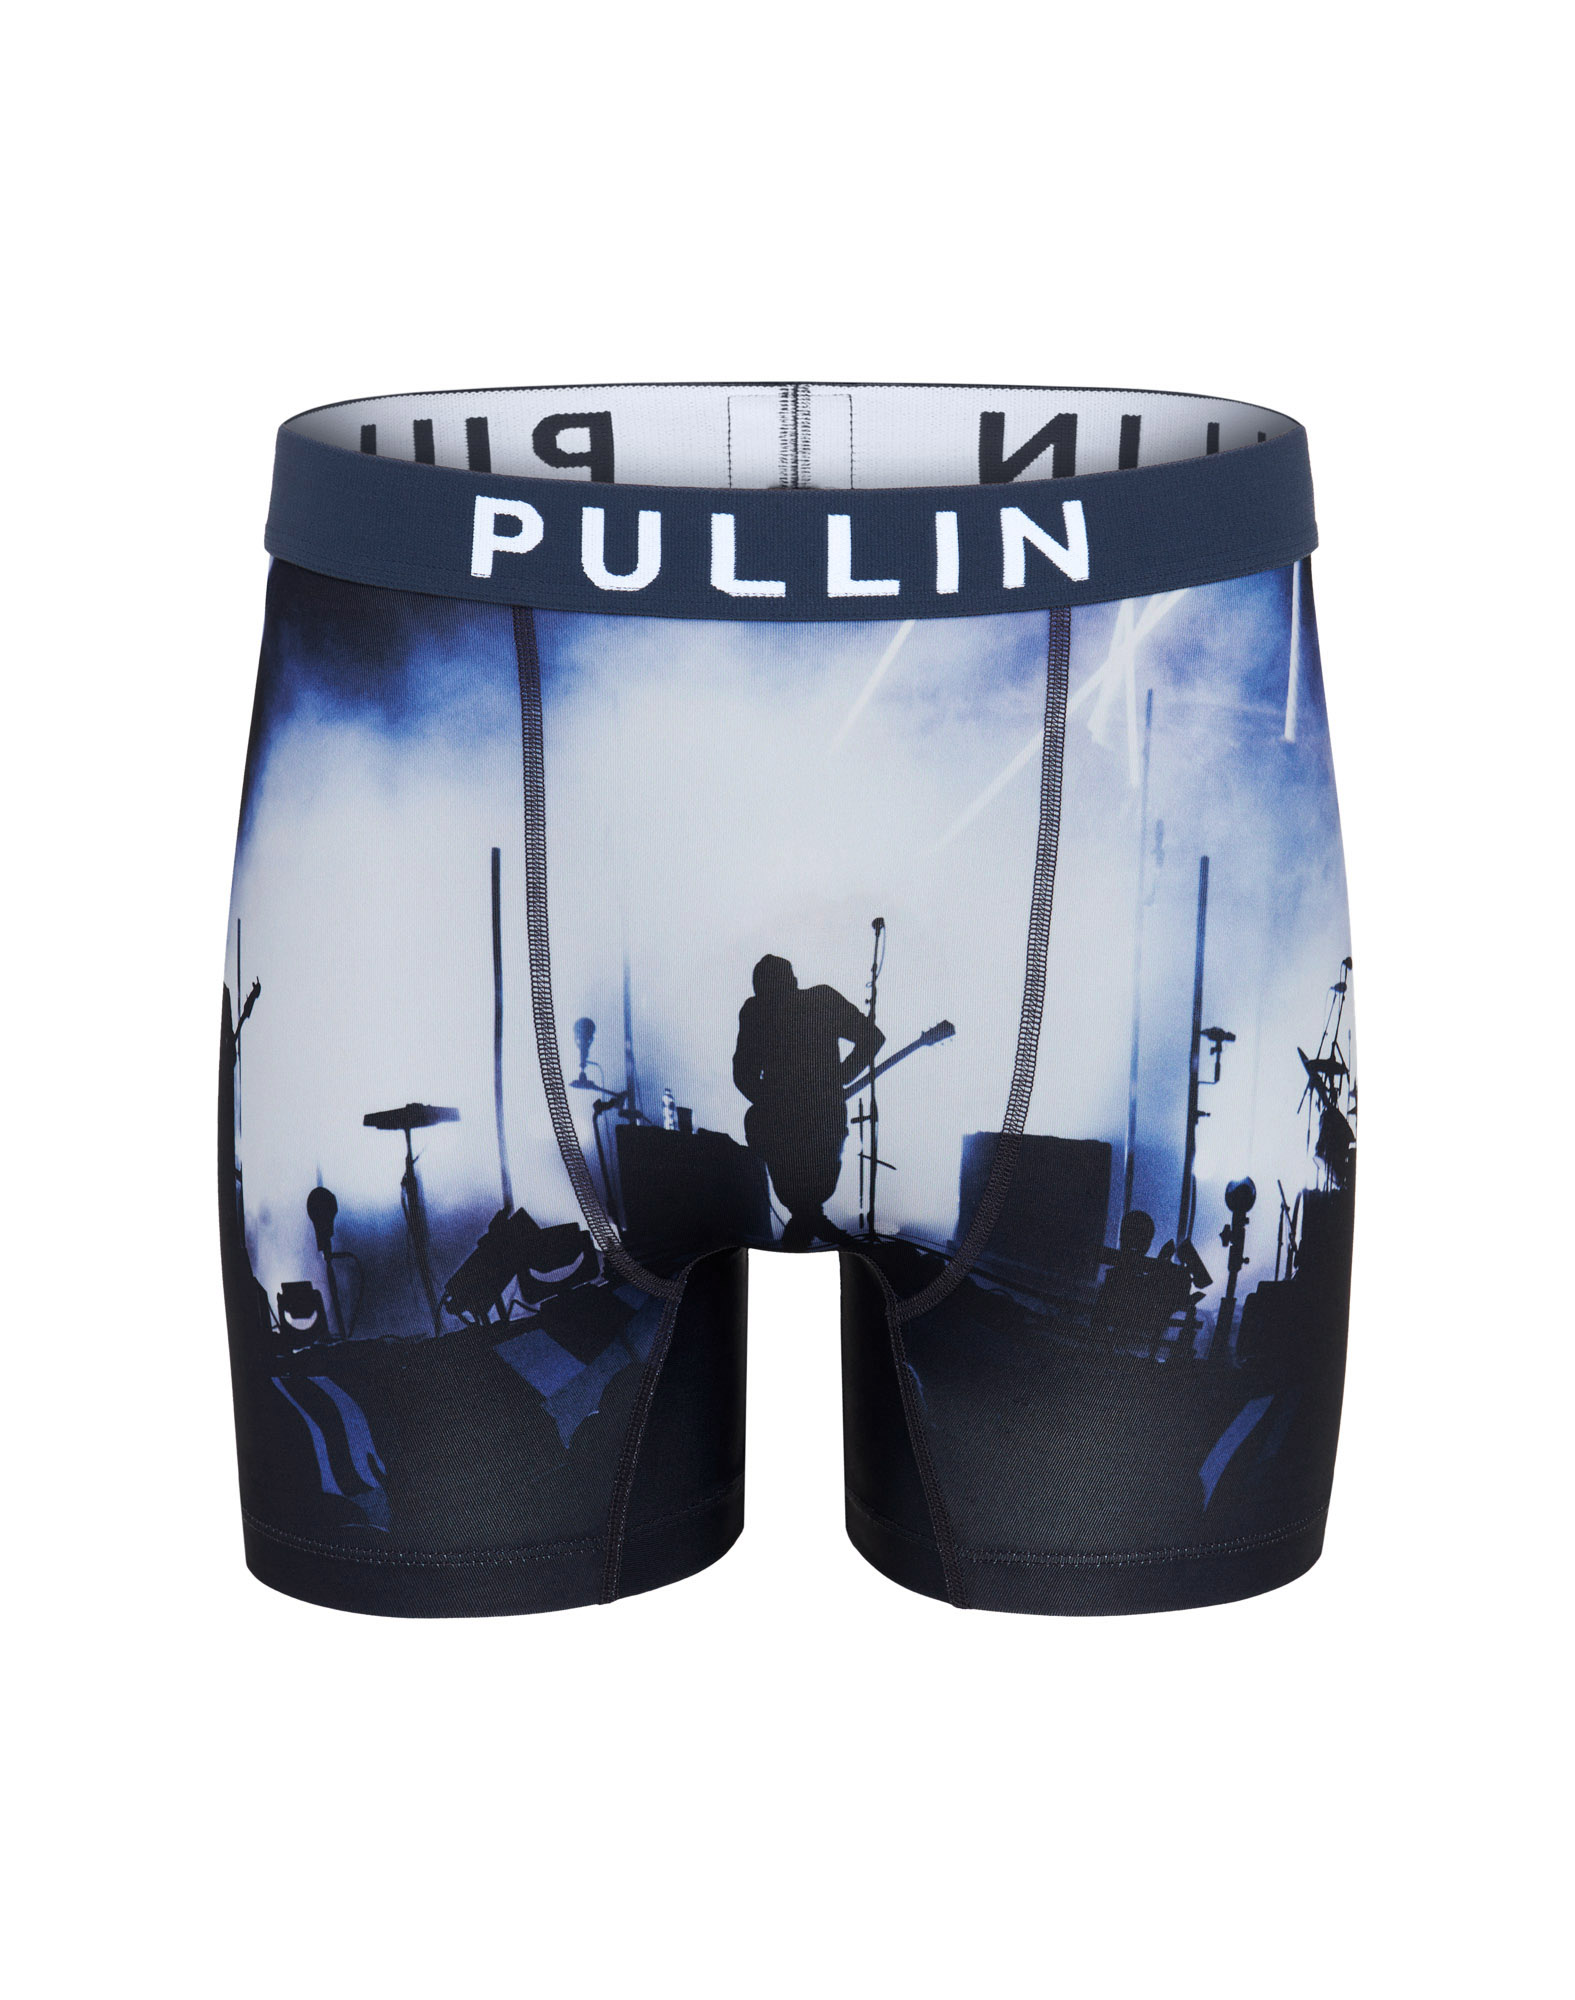 MULTICOLORED MEN'S TRUNK FASHION 2 JCDUSS - Men's underwear PULLIN